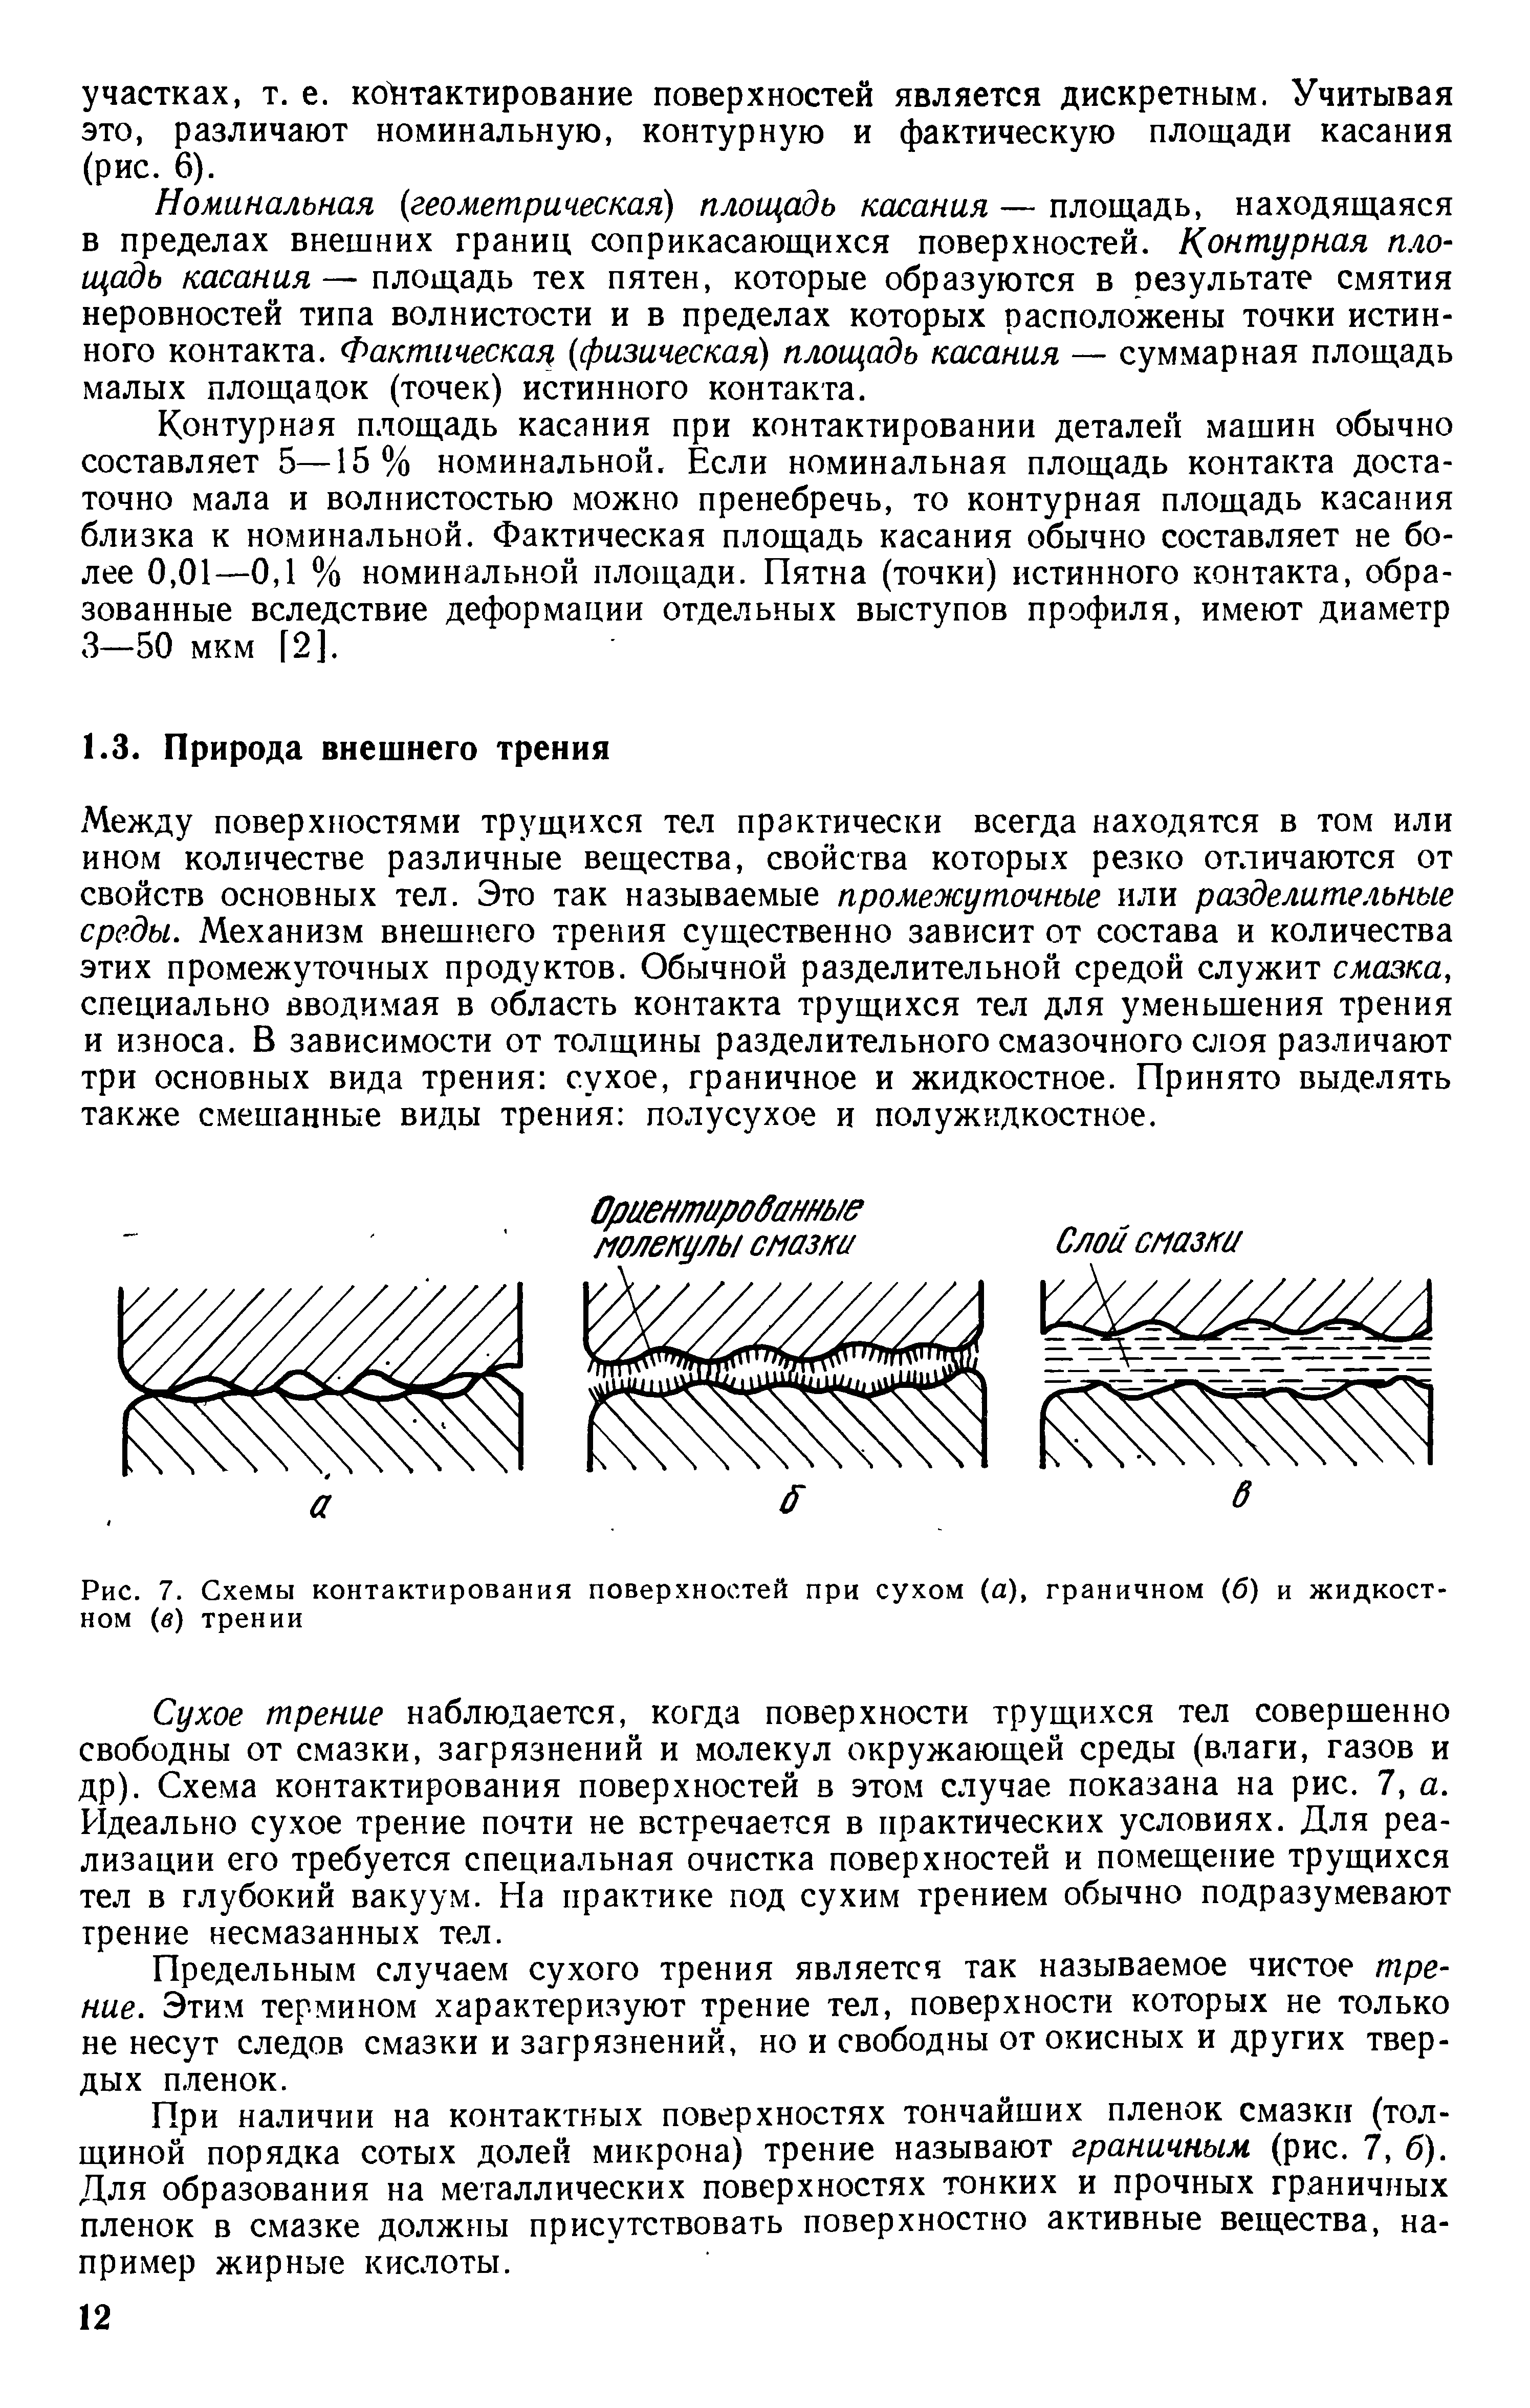 Рис. 7. Схемы контактирования поверхностей при сухом (а), граничном (б) и жидкостном (б) трении
